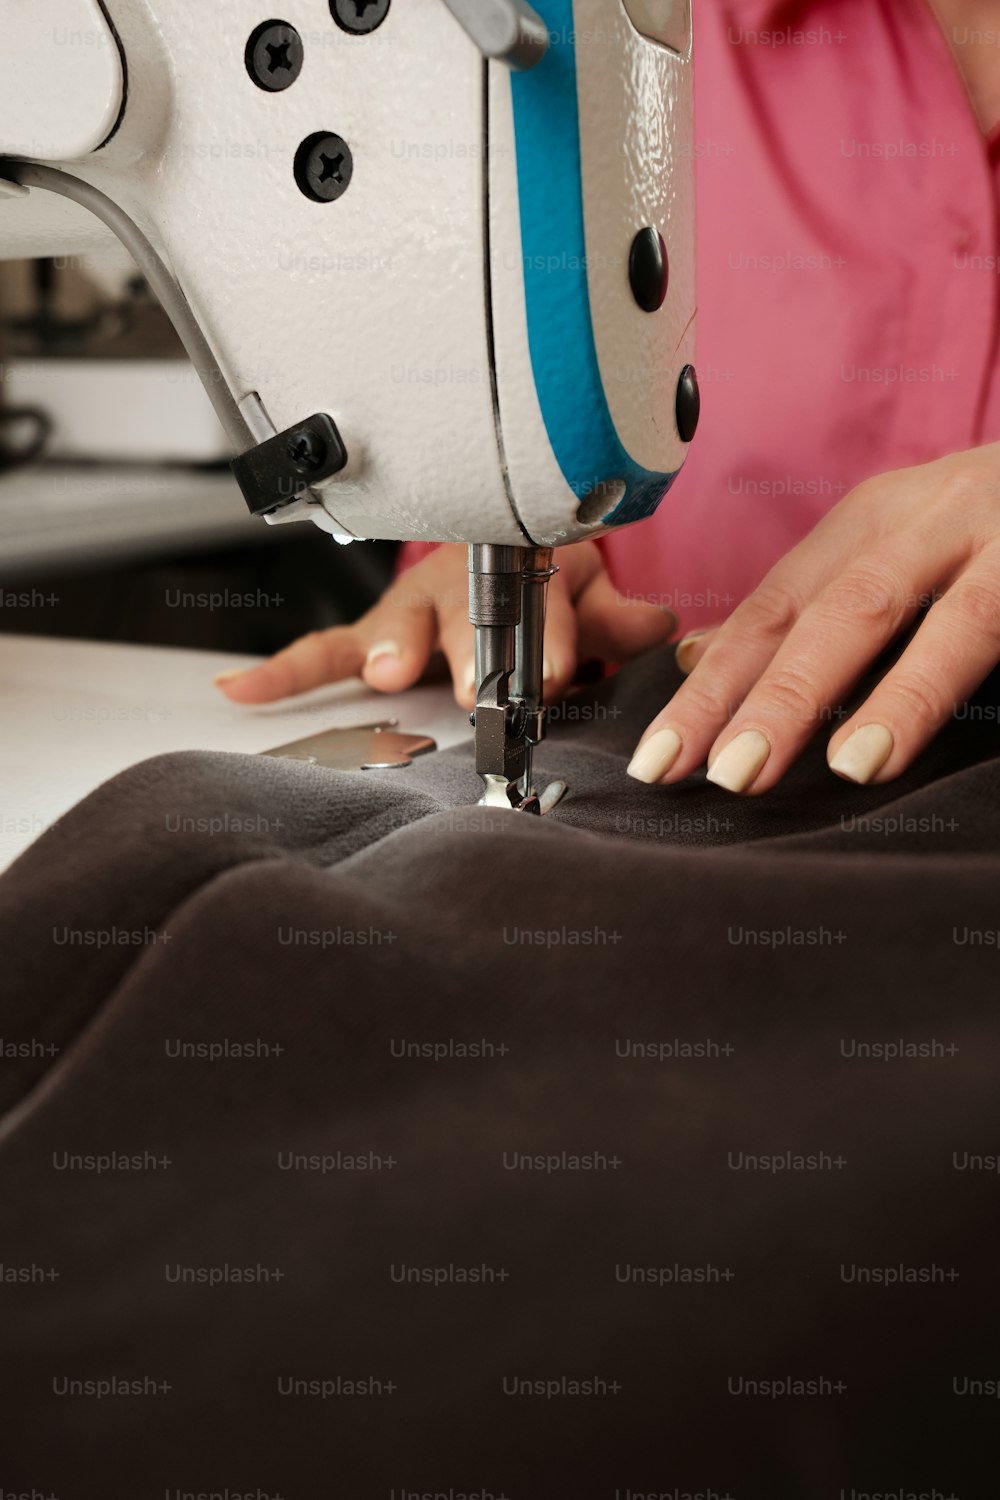 Una mujer usando una máquina de coser en un trozo de tela